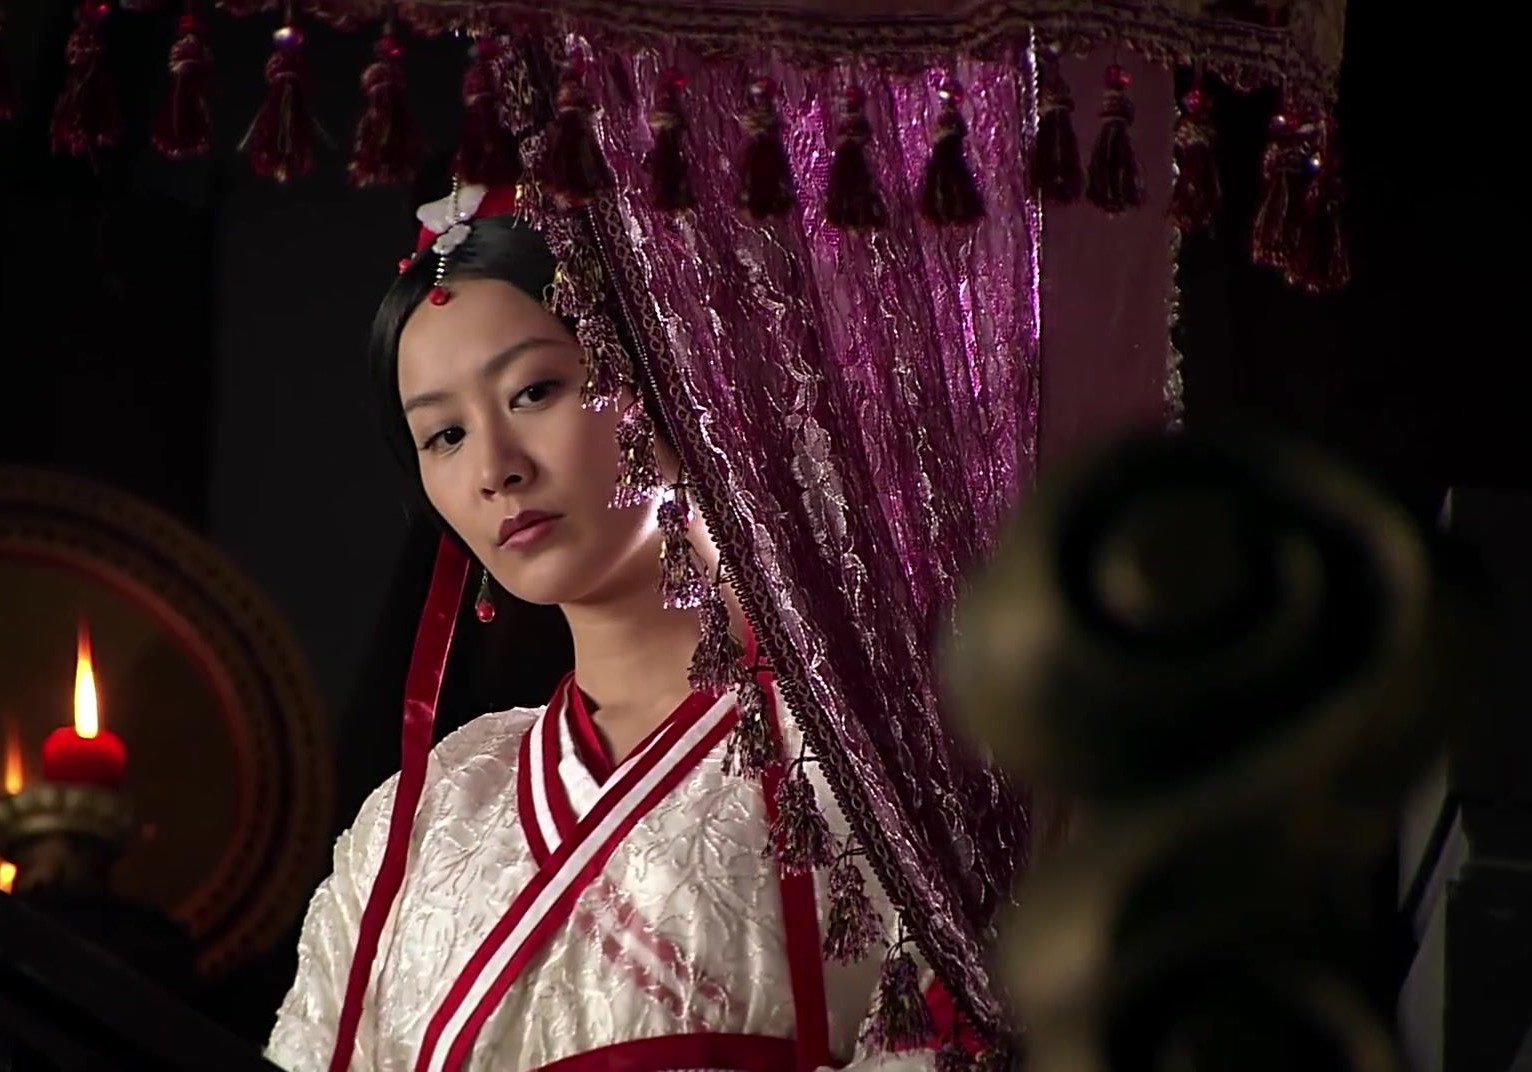 《风中奇缘》中陈法拉扮演秦湘,穿着一件白色薄纱古装裙很是清新秀丽